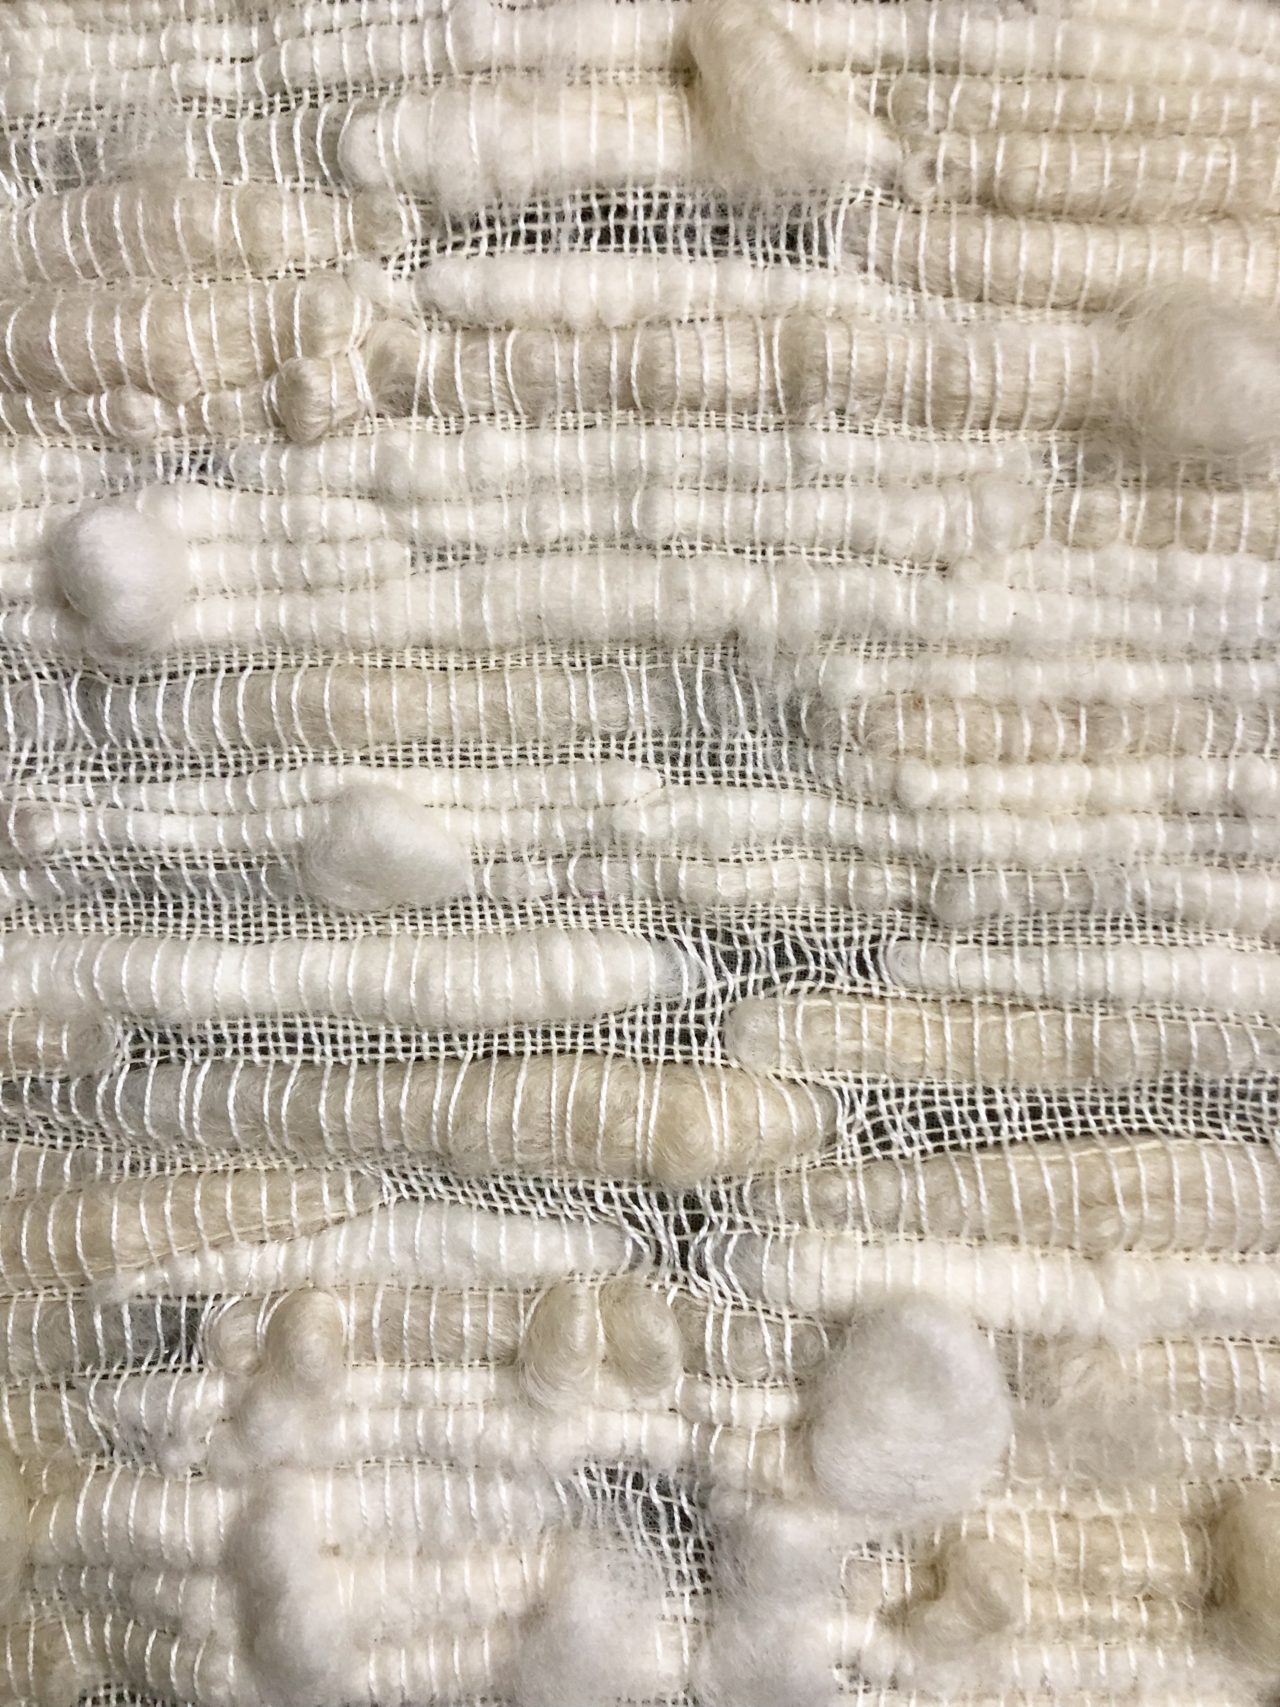 Wool and silk handloom by Tanu Vasu. (Photo Courtesy of Tanu Vasu)